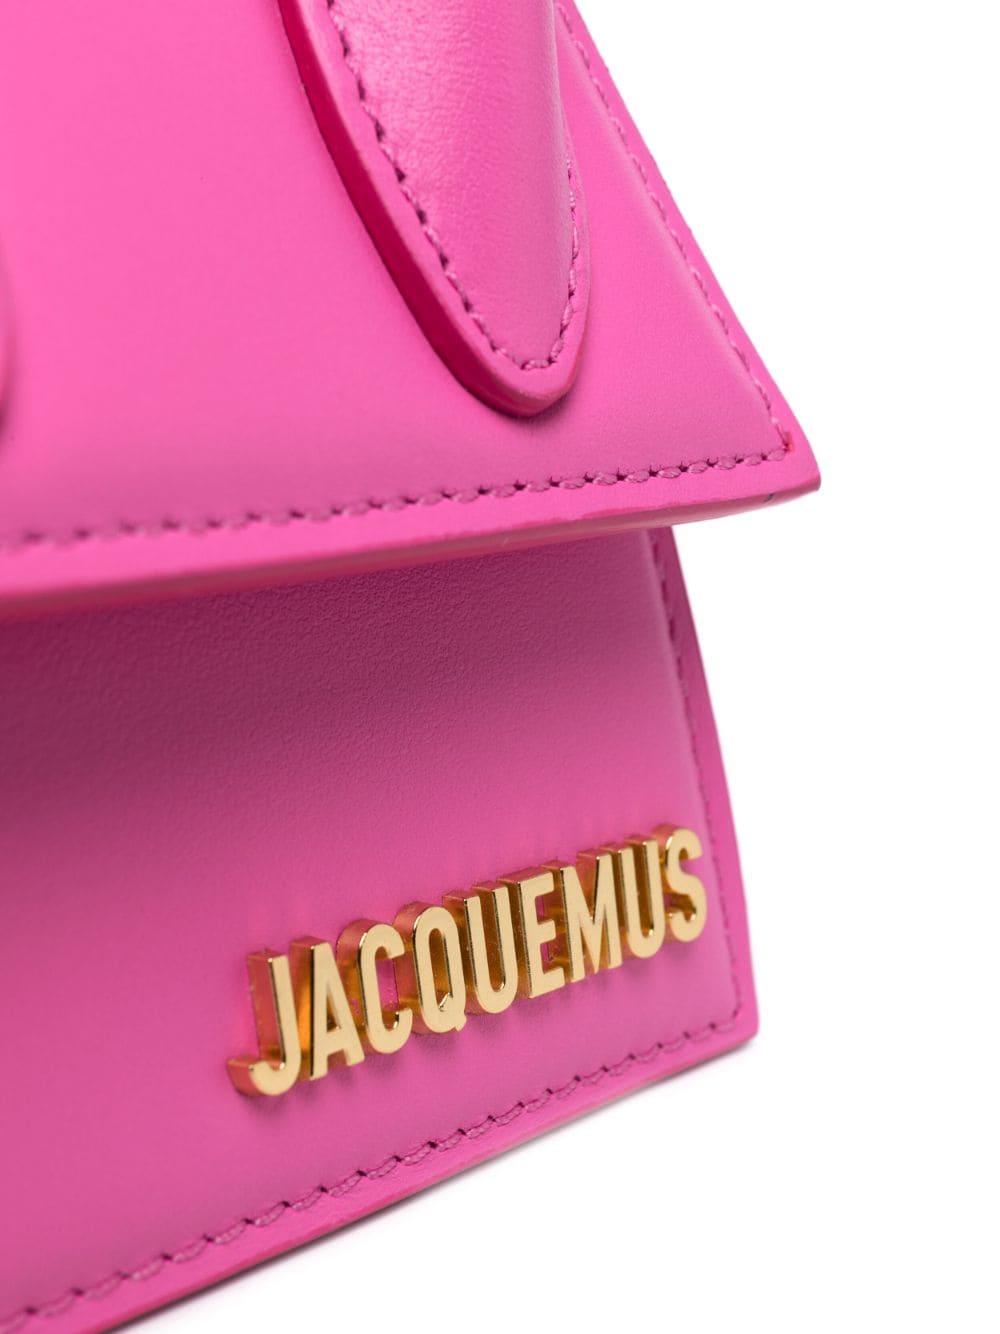 Jacquemus Pink Leather Le Chiquito Moyen Top Handle Bag Jacquemus